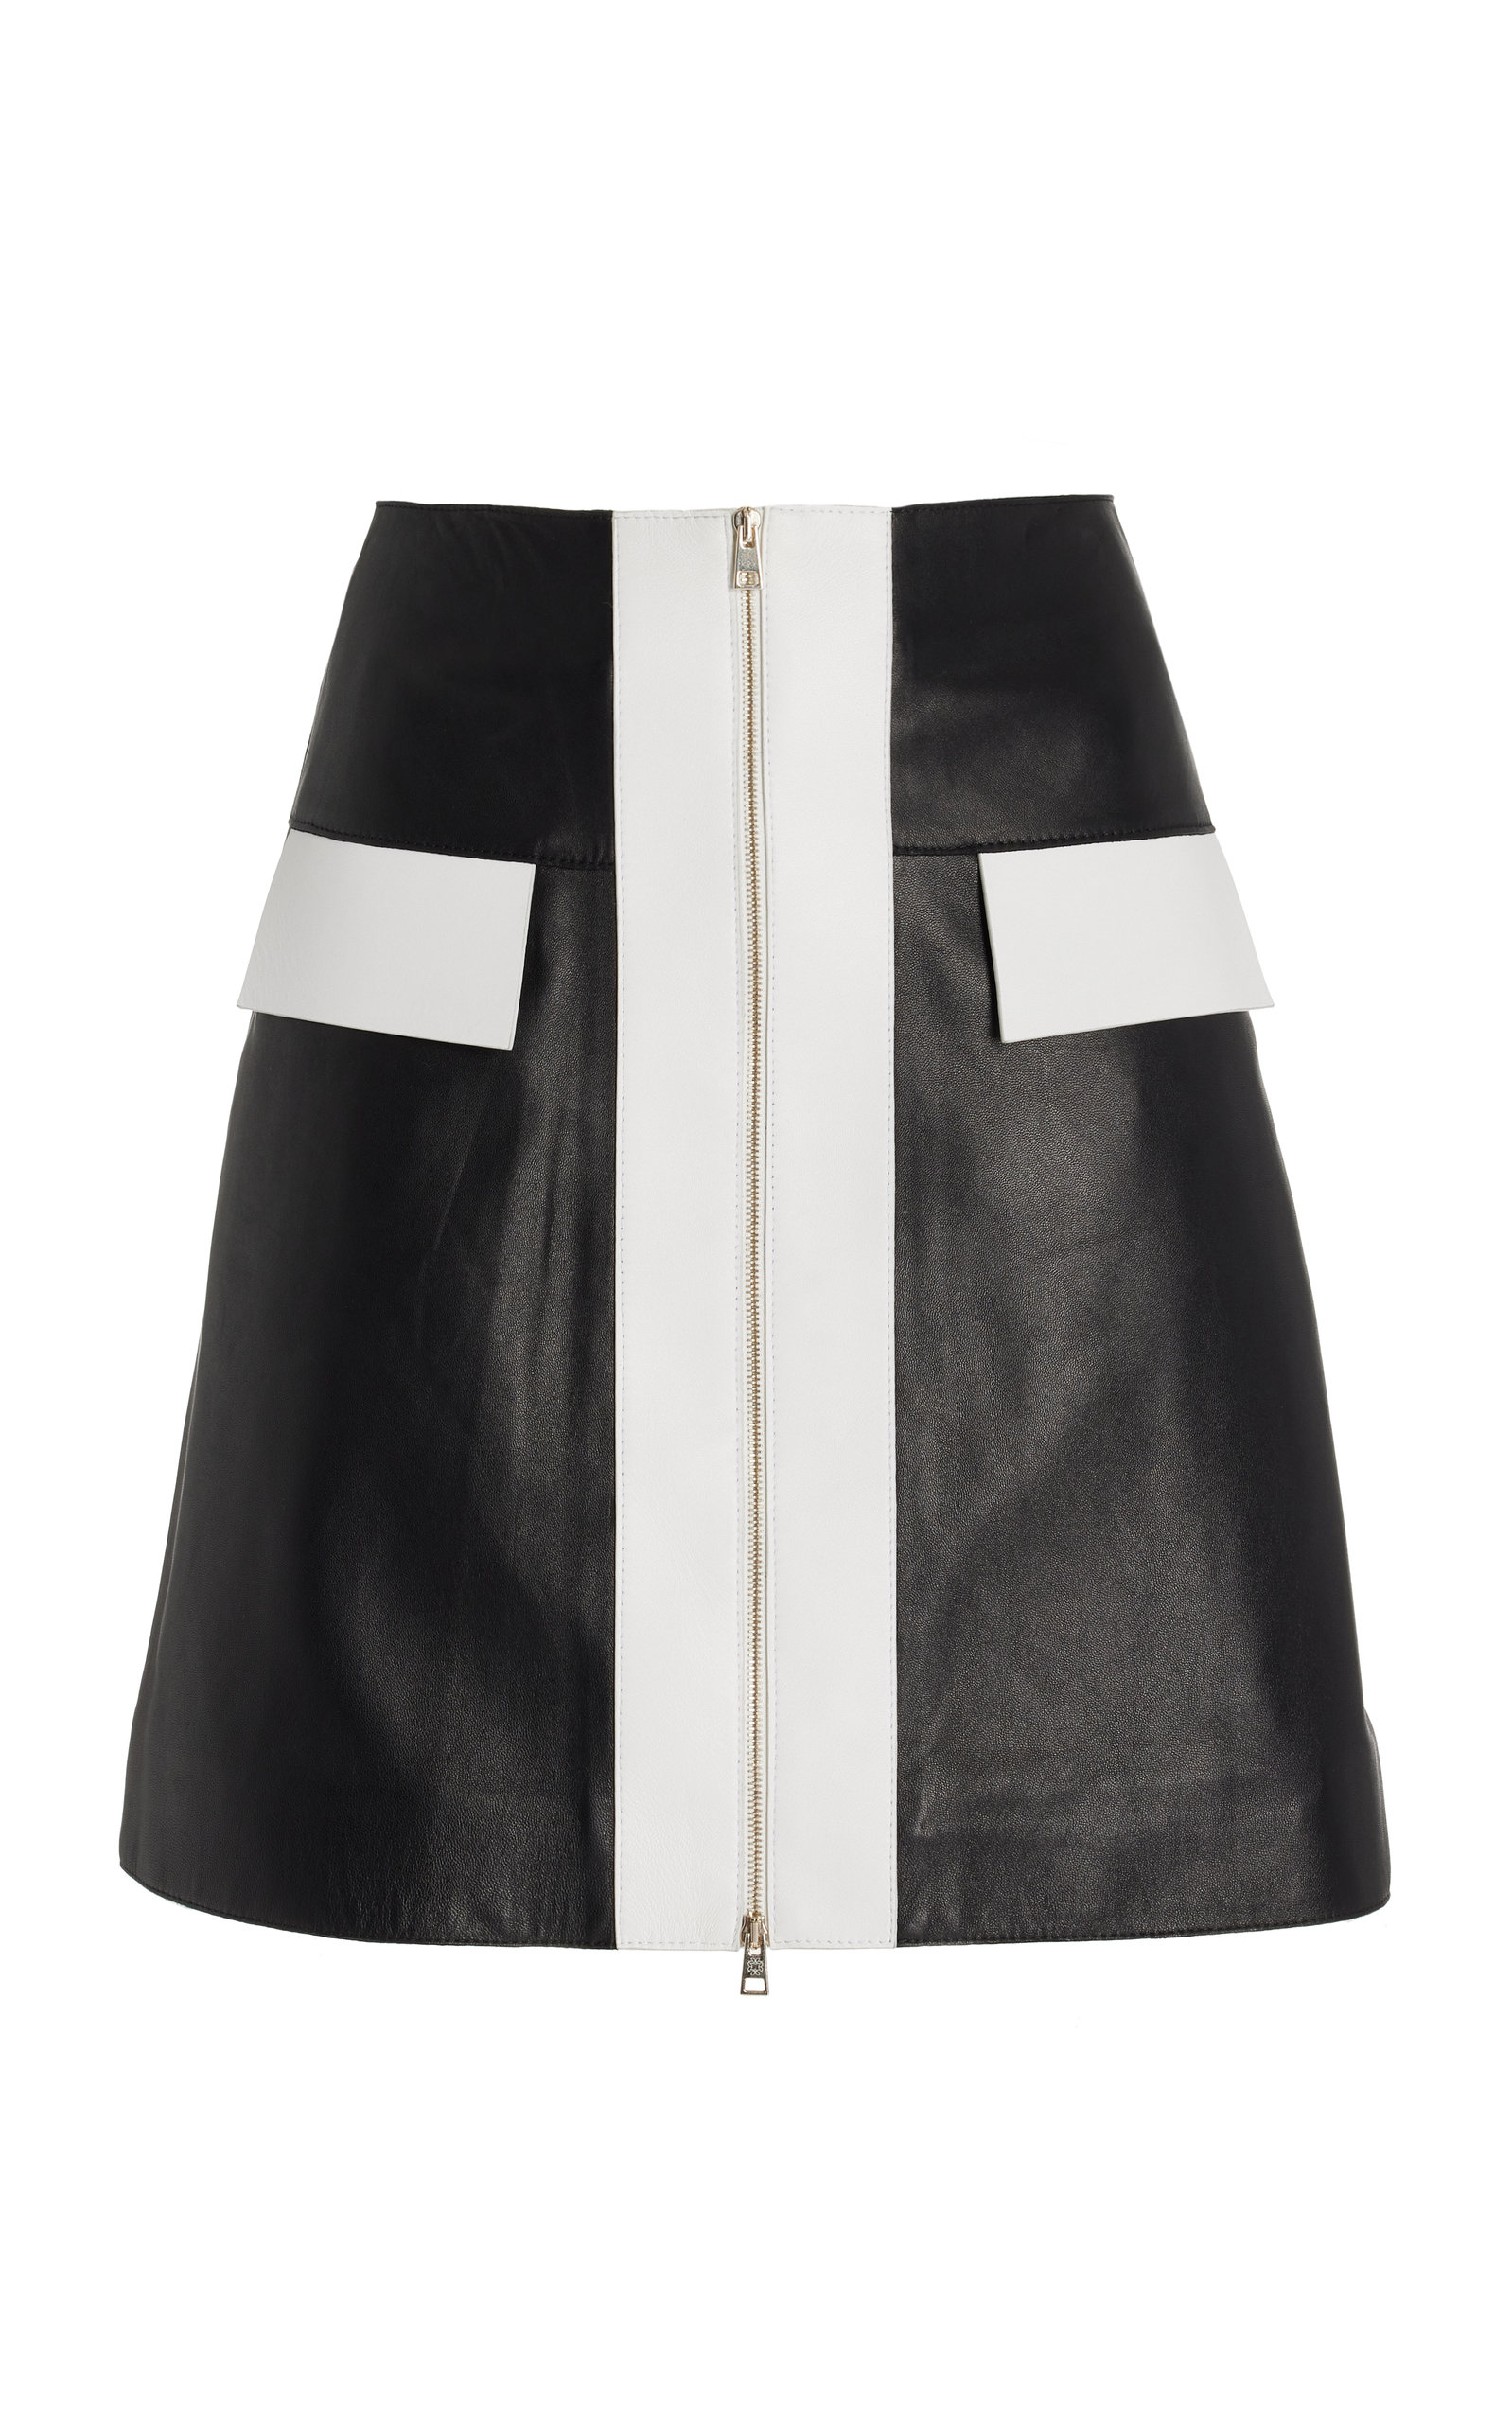 Elie Saab Women's Leather Short Skirt In Black,white ModeSens